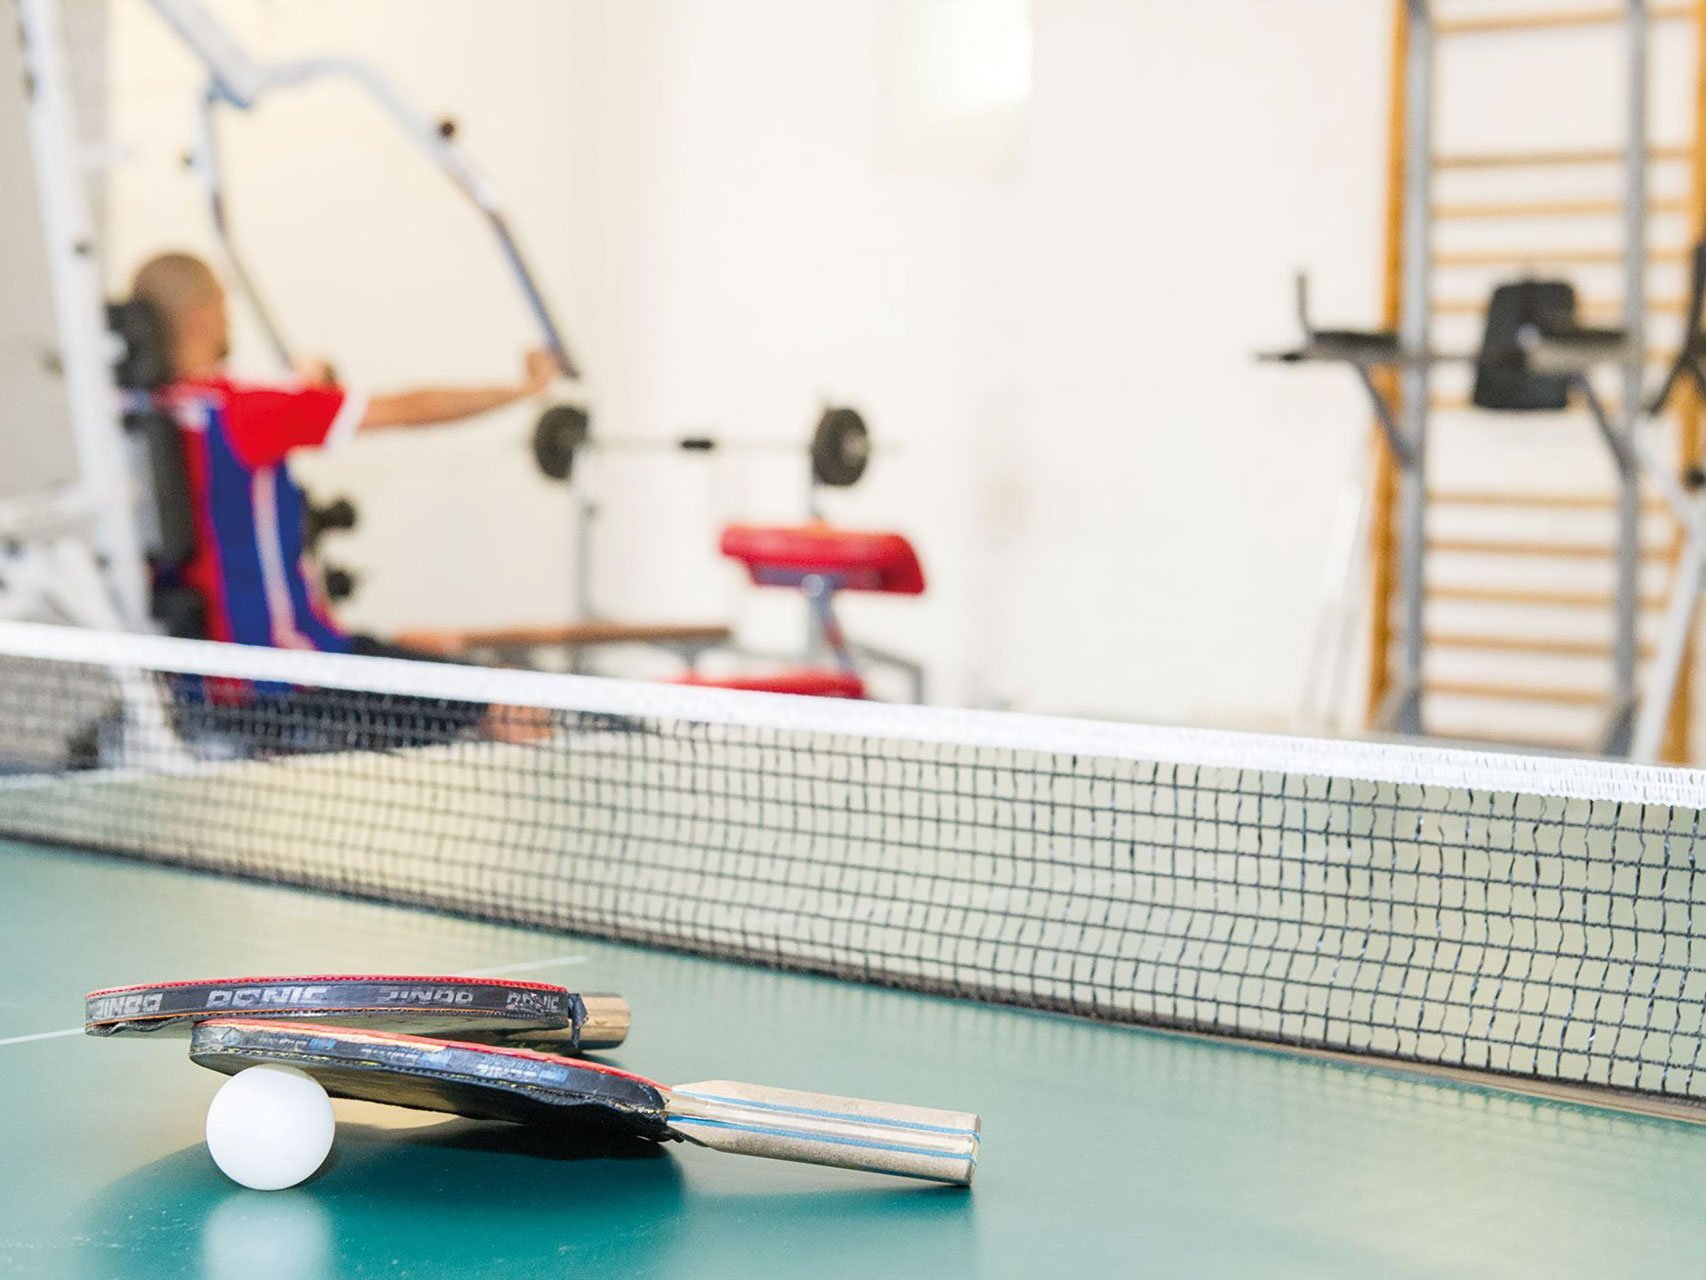 auf einer Tischtennisplatte liegen zwei Schläger und ein Ball - im Hintergrund trainiert jemand